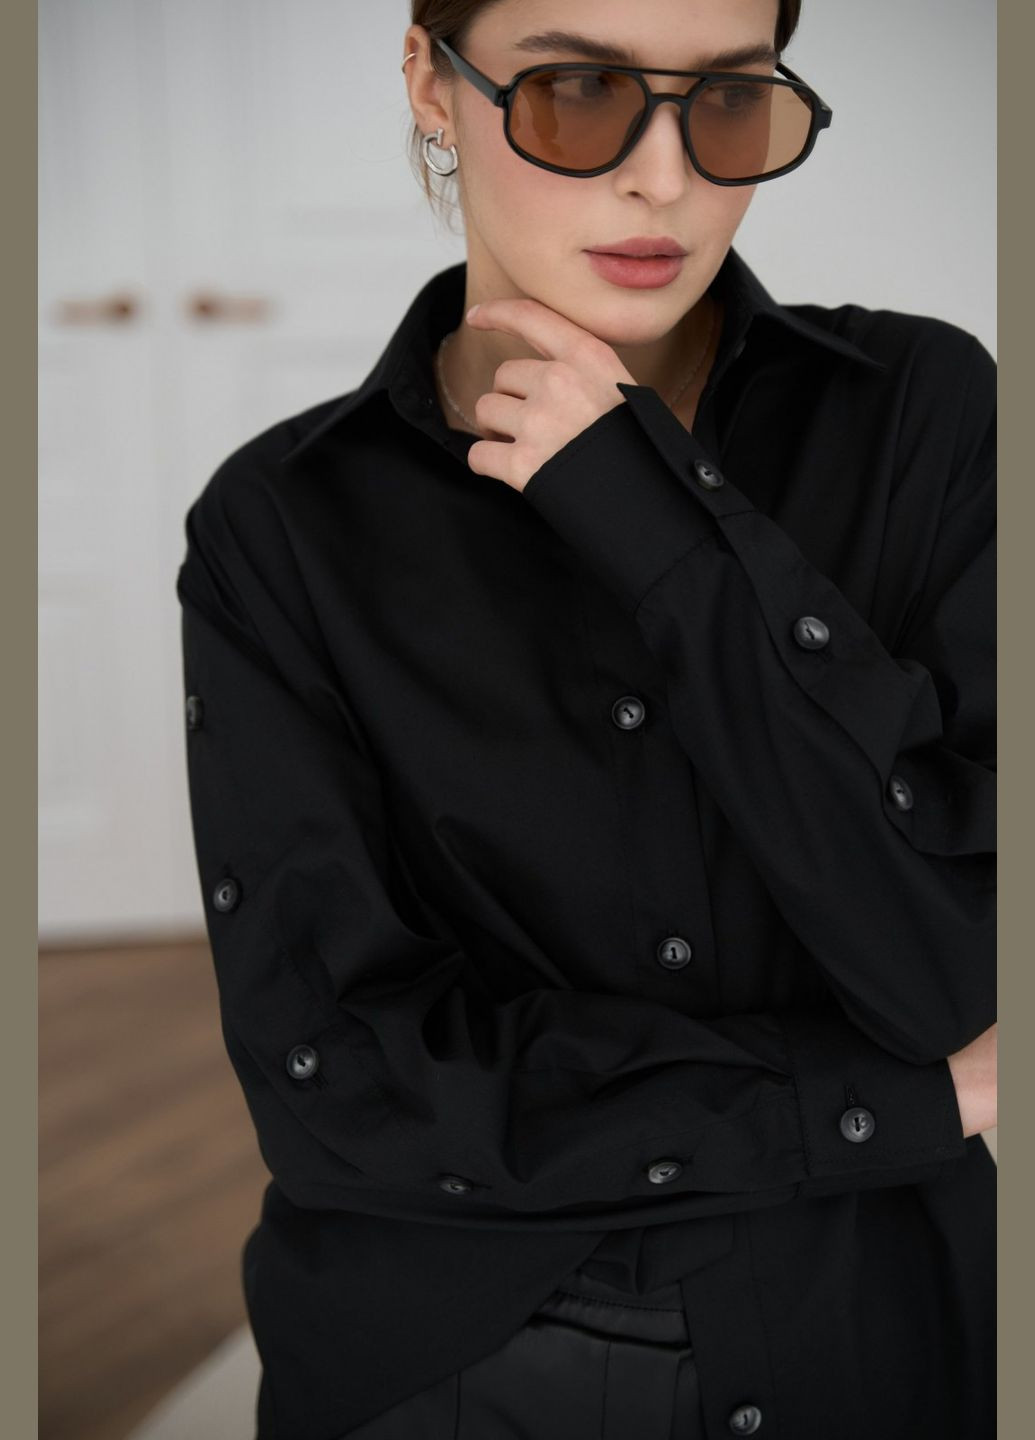 Черная женская классическая рубашка из хлопка цвет черный р.m/l 451480 New Trend